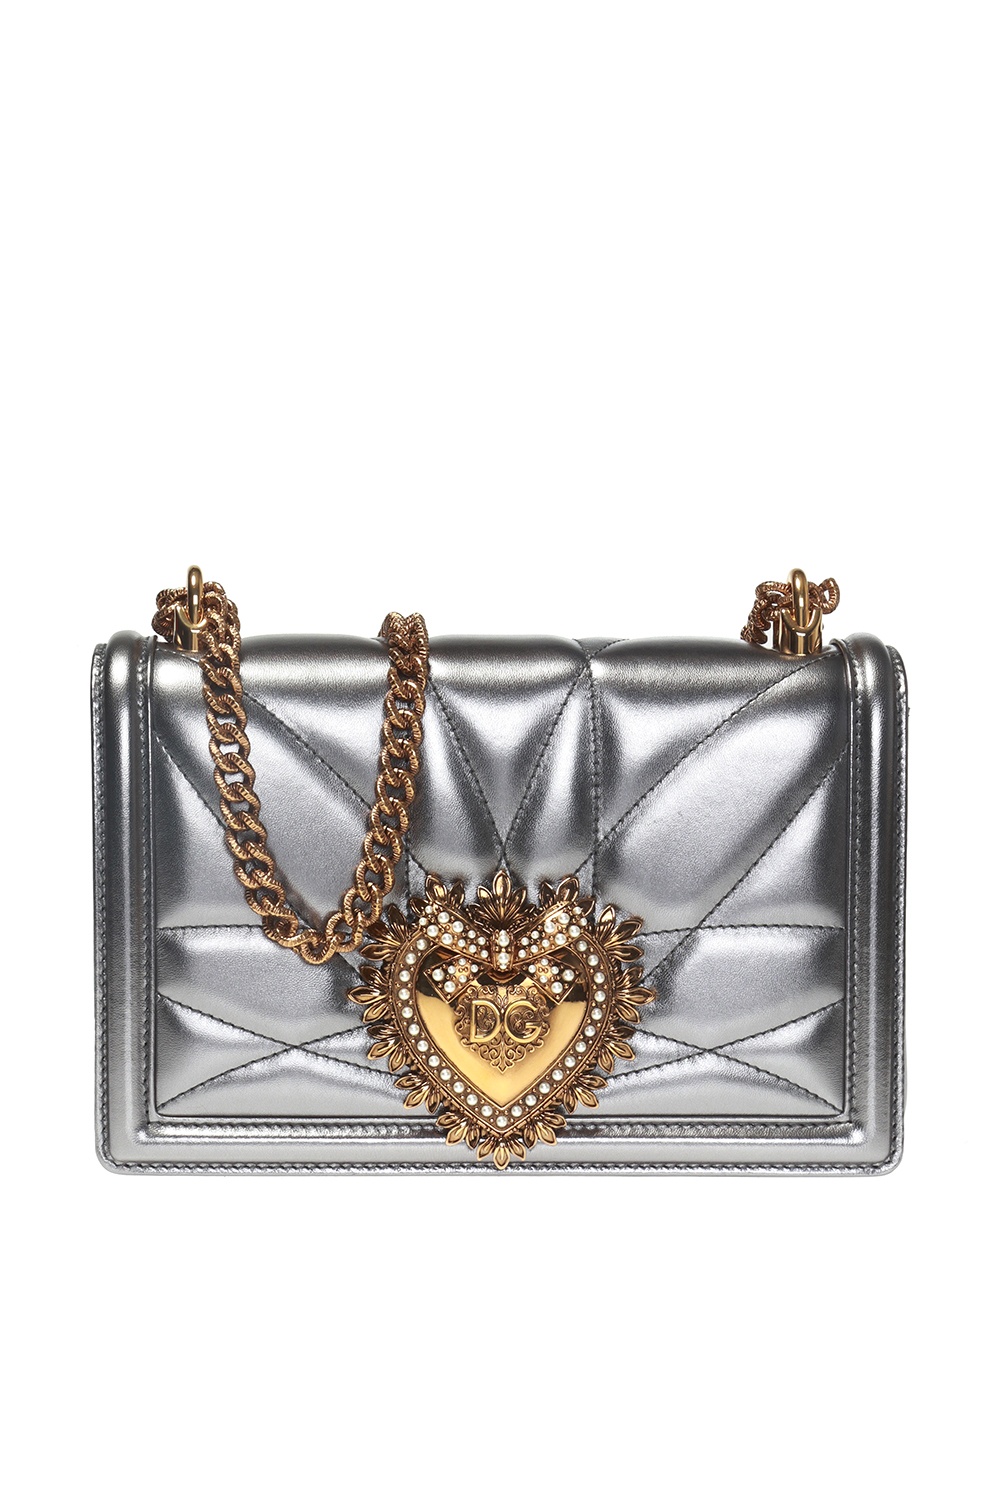 Dolce & Gabbana devotion mini embellished quilted leather shoulder